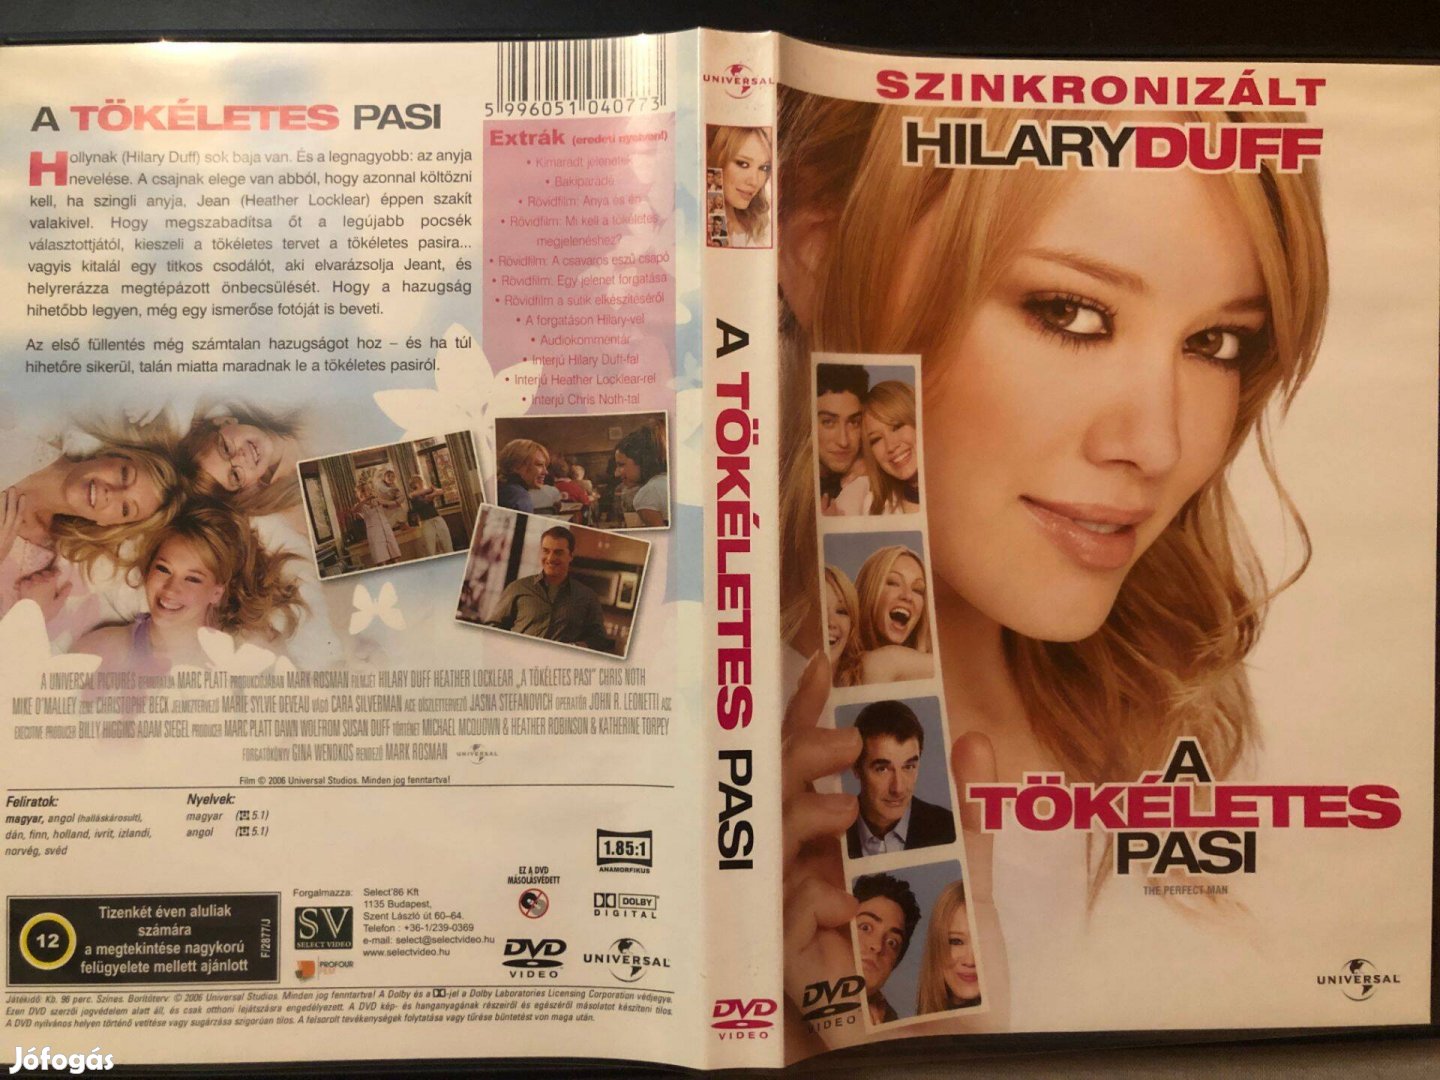 A tökéletes pasi (karcmentes, Hilary Duff) DVD